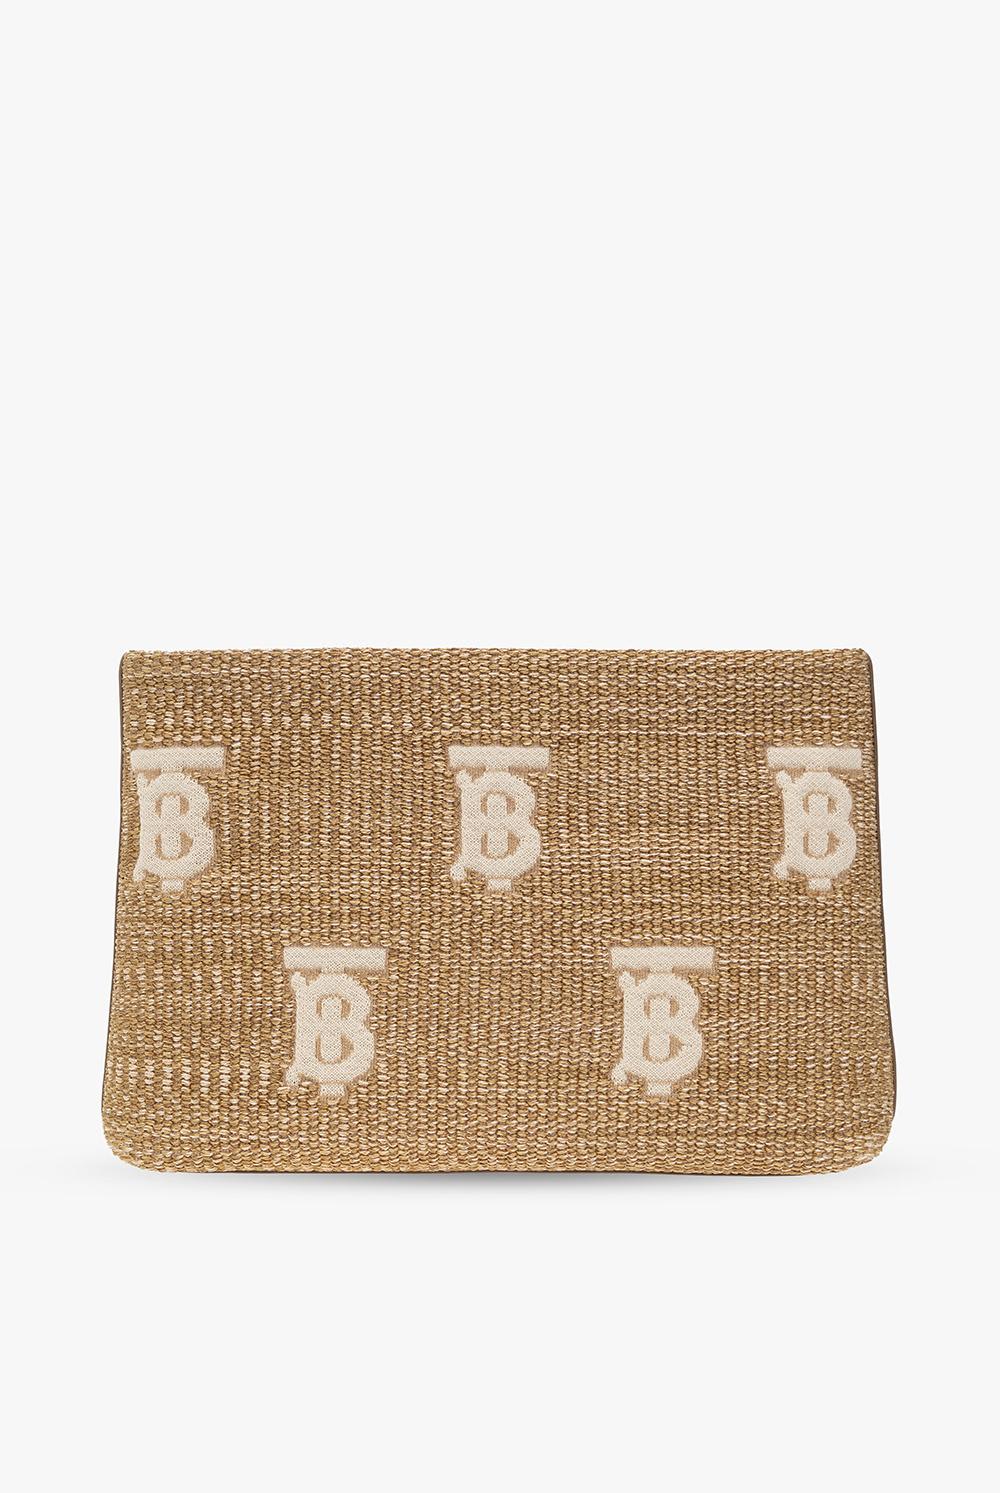 Burberry Duncan Handbag In Natural/beige